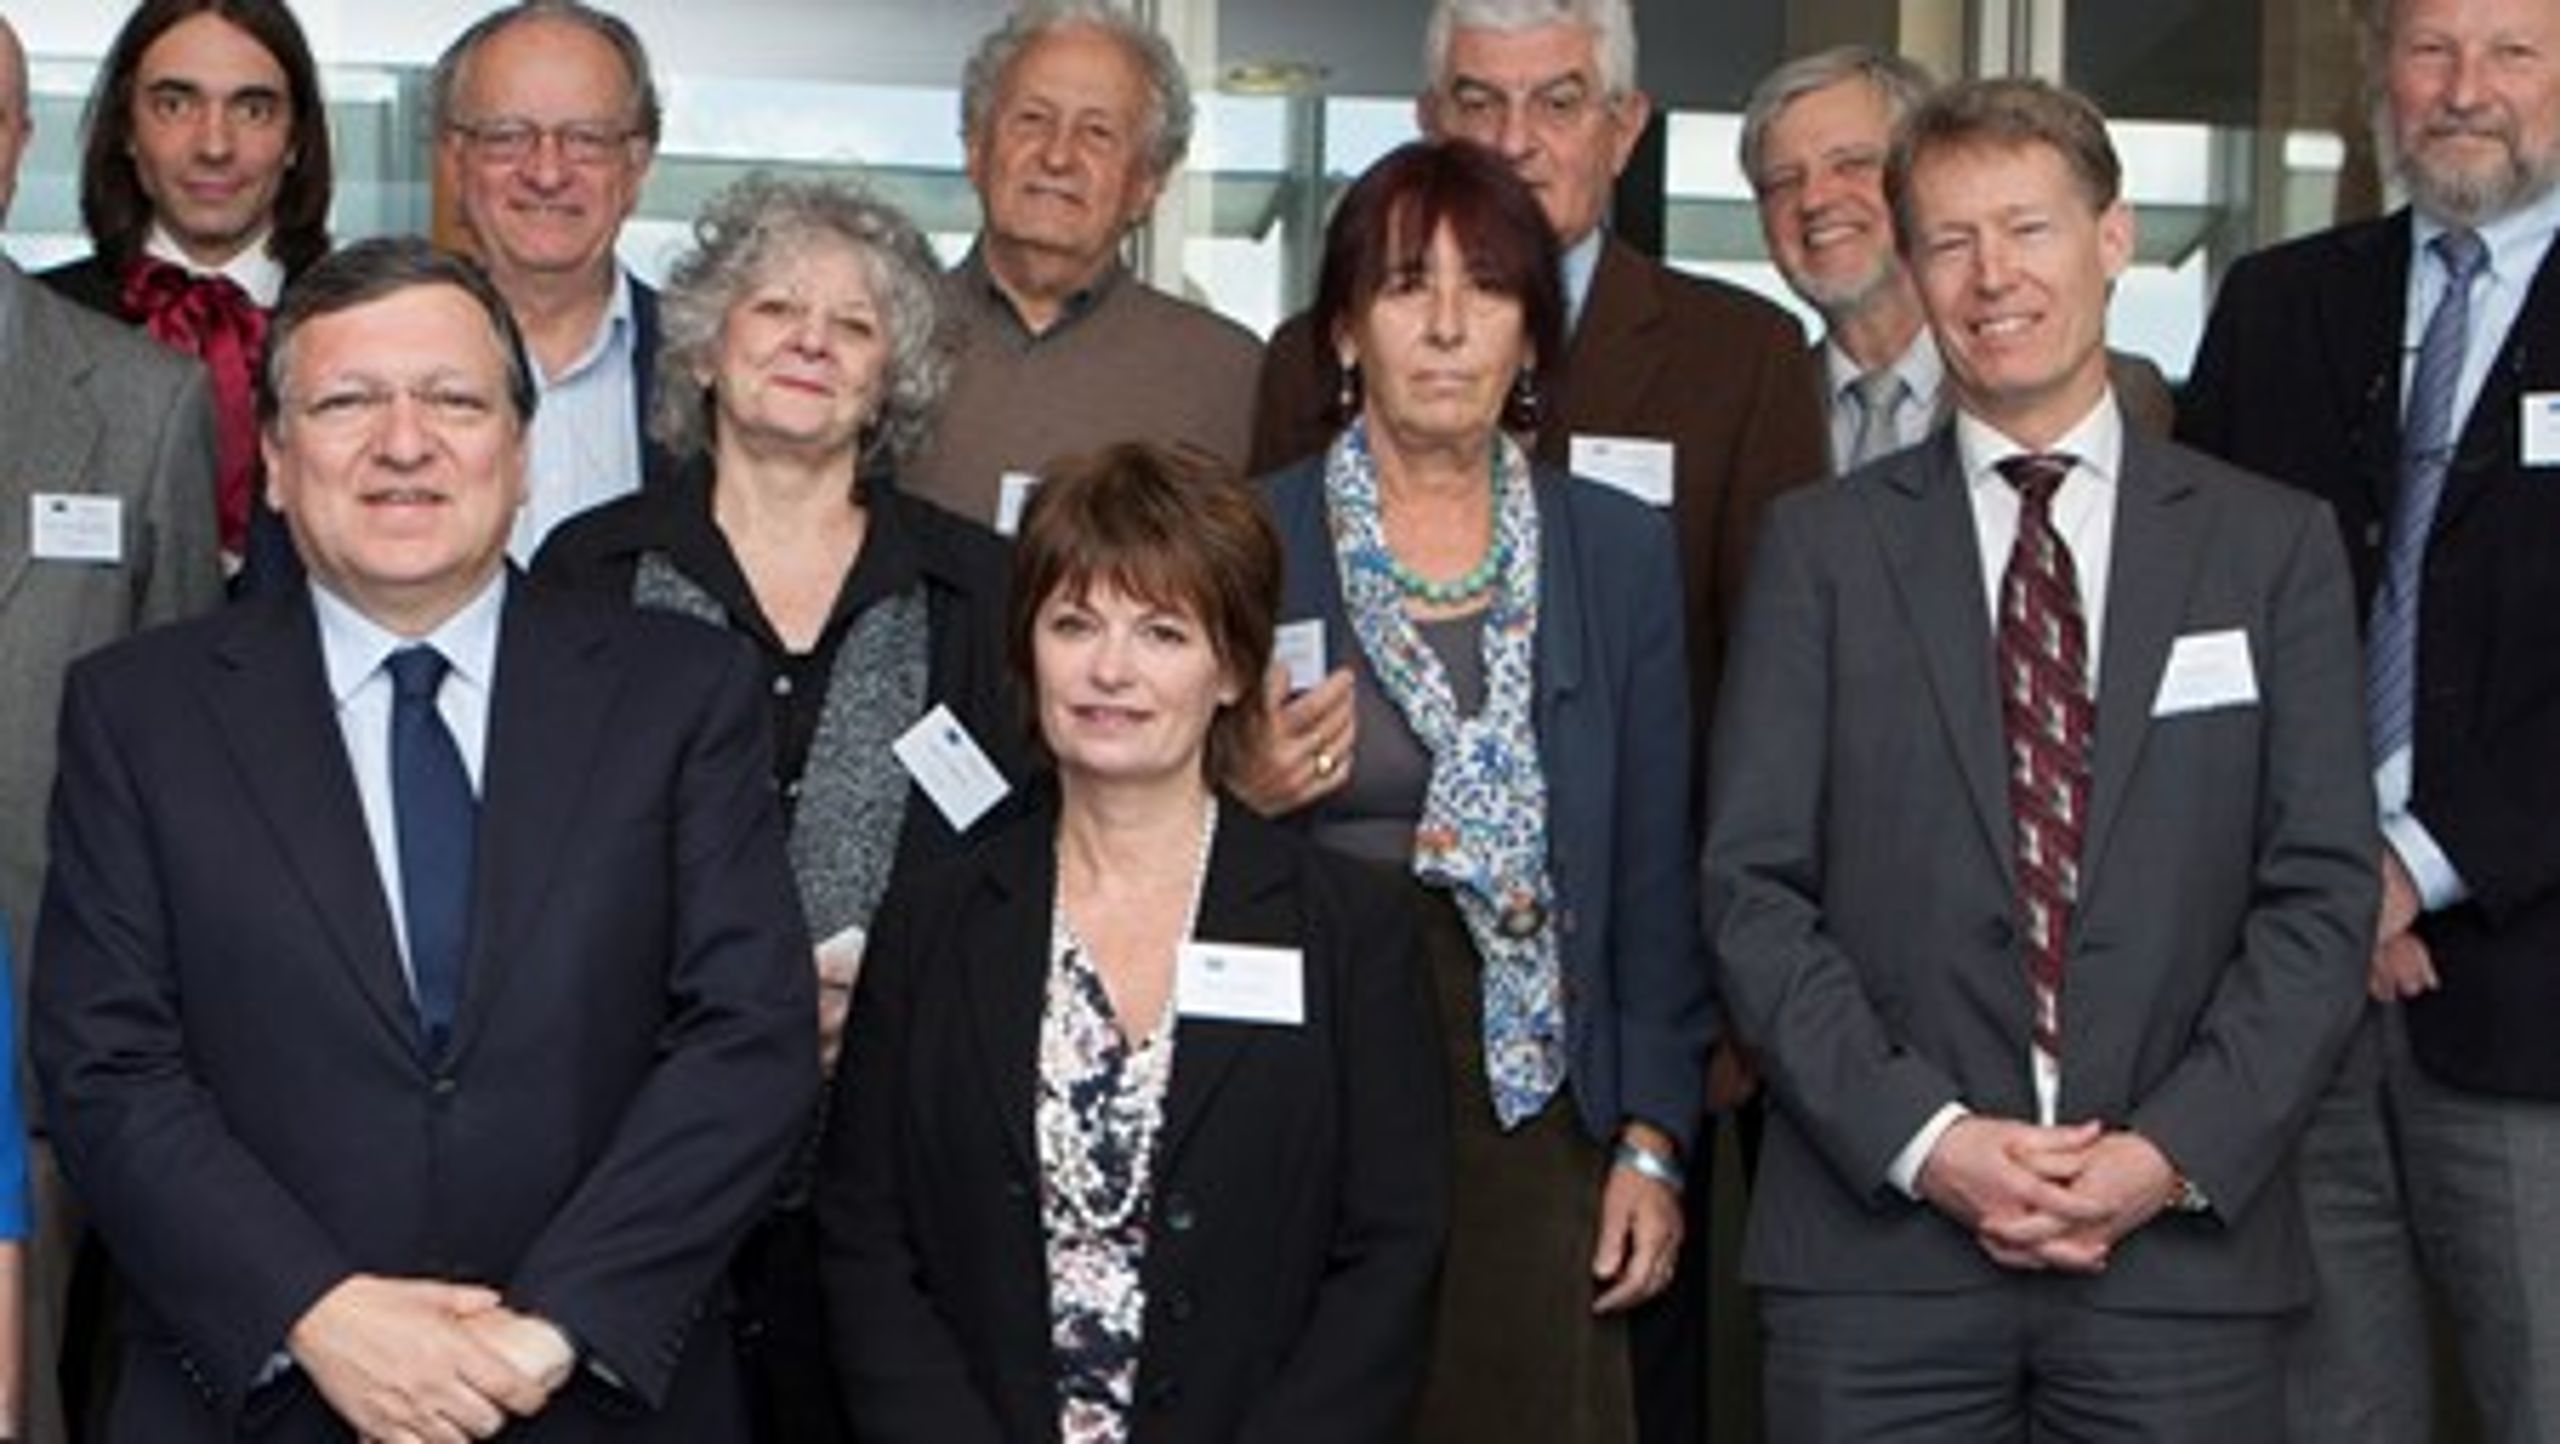 Anne Glover (nederst i midten)&nbsp;ved siden af tidligere kommissionsformand Jose Manuel Barroso. Han udnævnte hende til&nbsp;EU-Kommissionens første videnskabelige chefrådgiver. Hun bliver med stor sandsynlighed også den sidste.